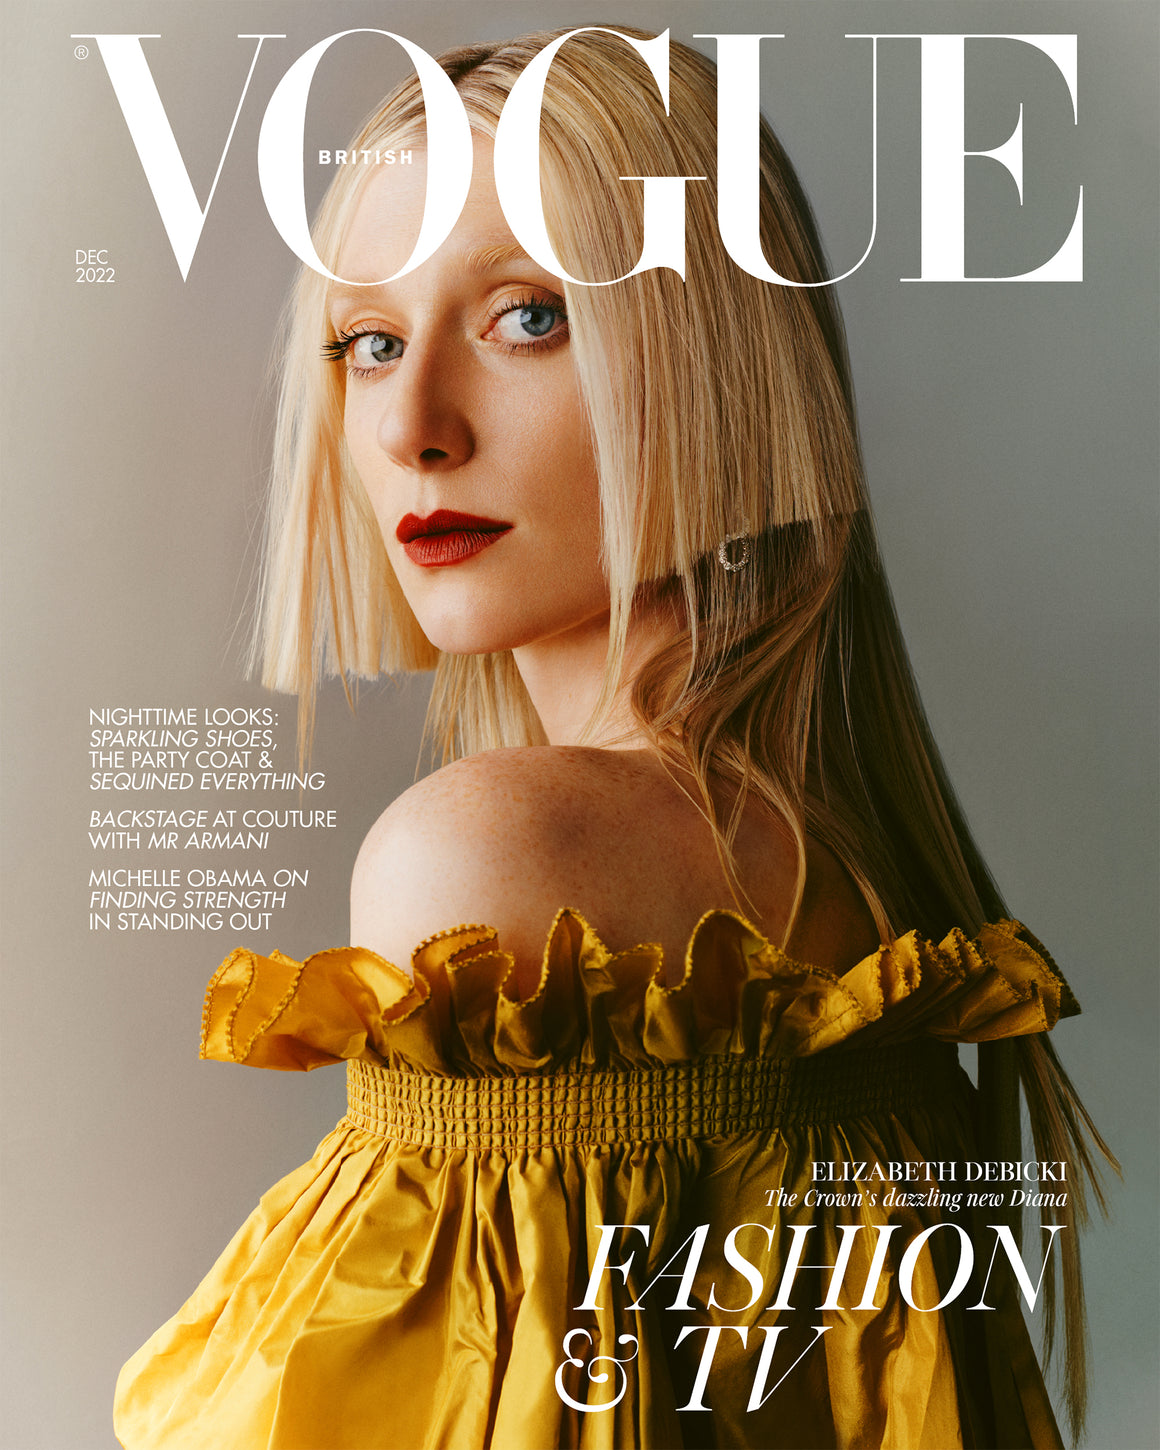 Elizabeth Debicki for Vogue UK Magazine - December 2022 - The Crown